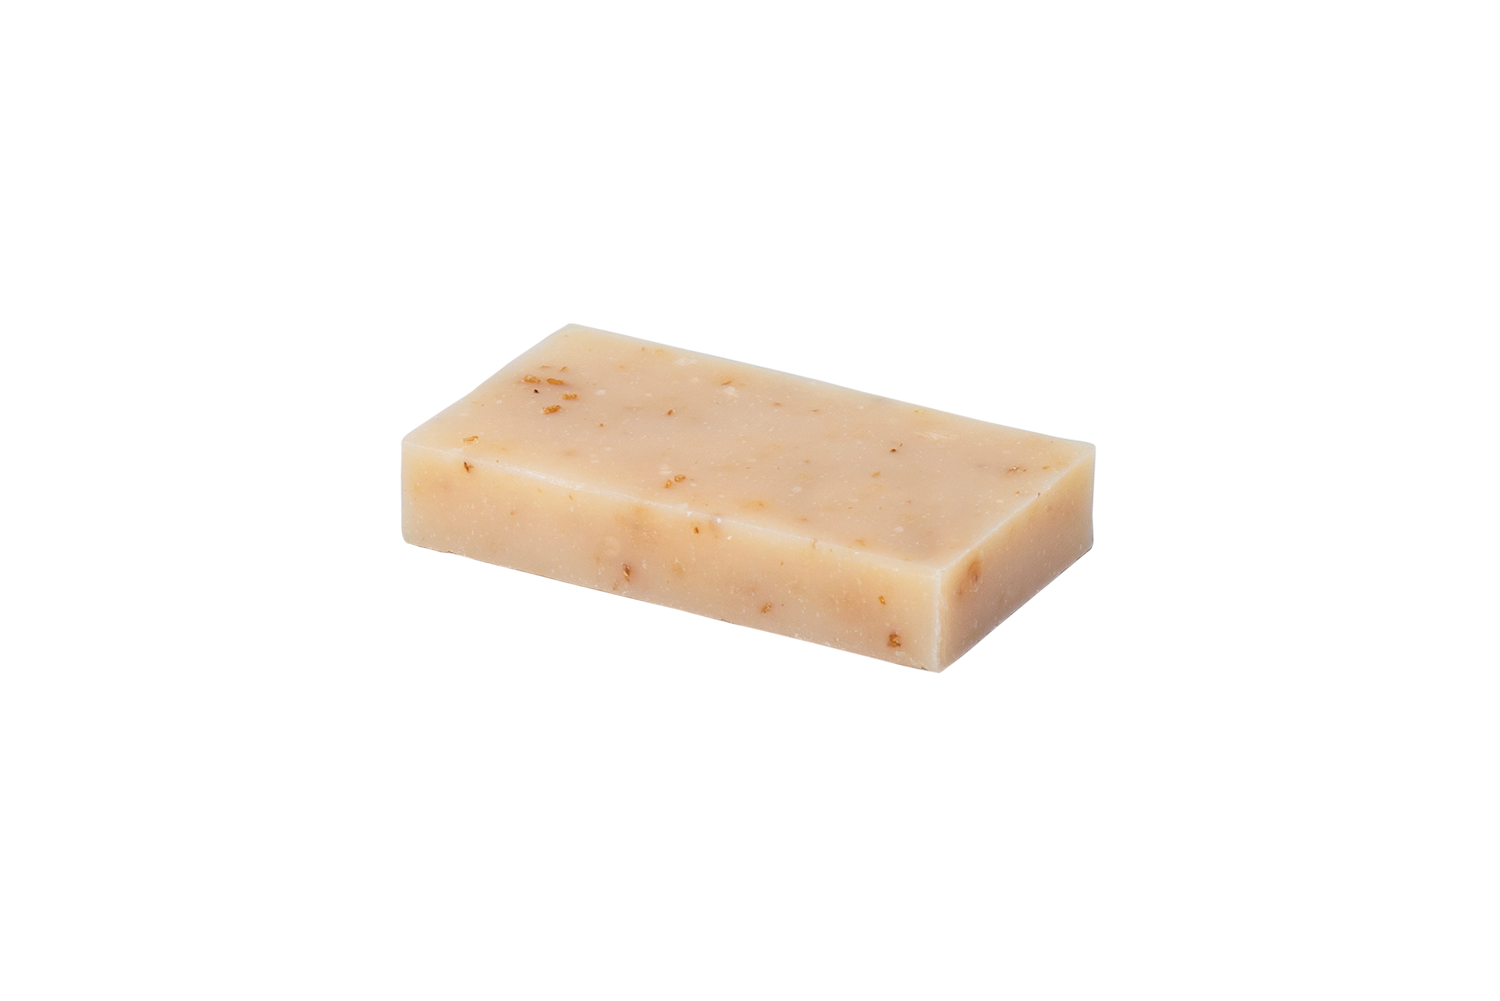 1 oz bar of shea honey oatmeal bar soap